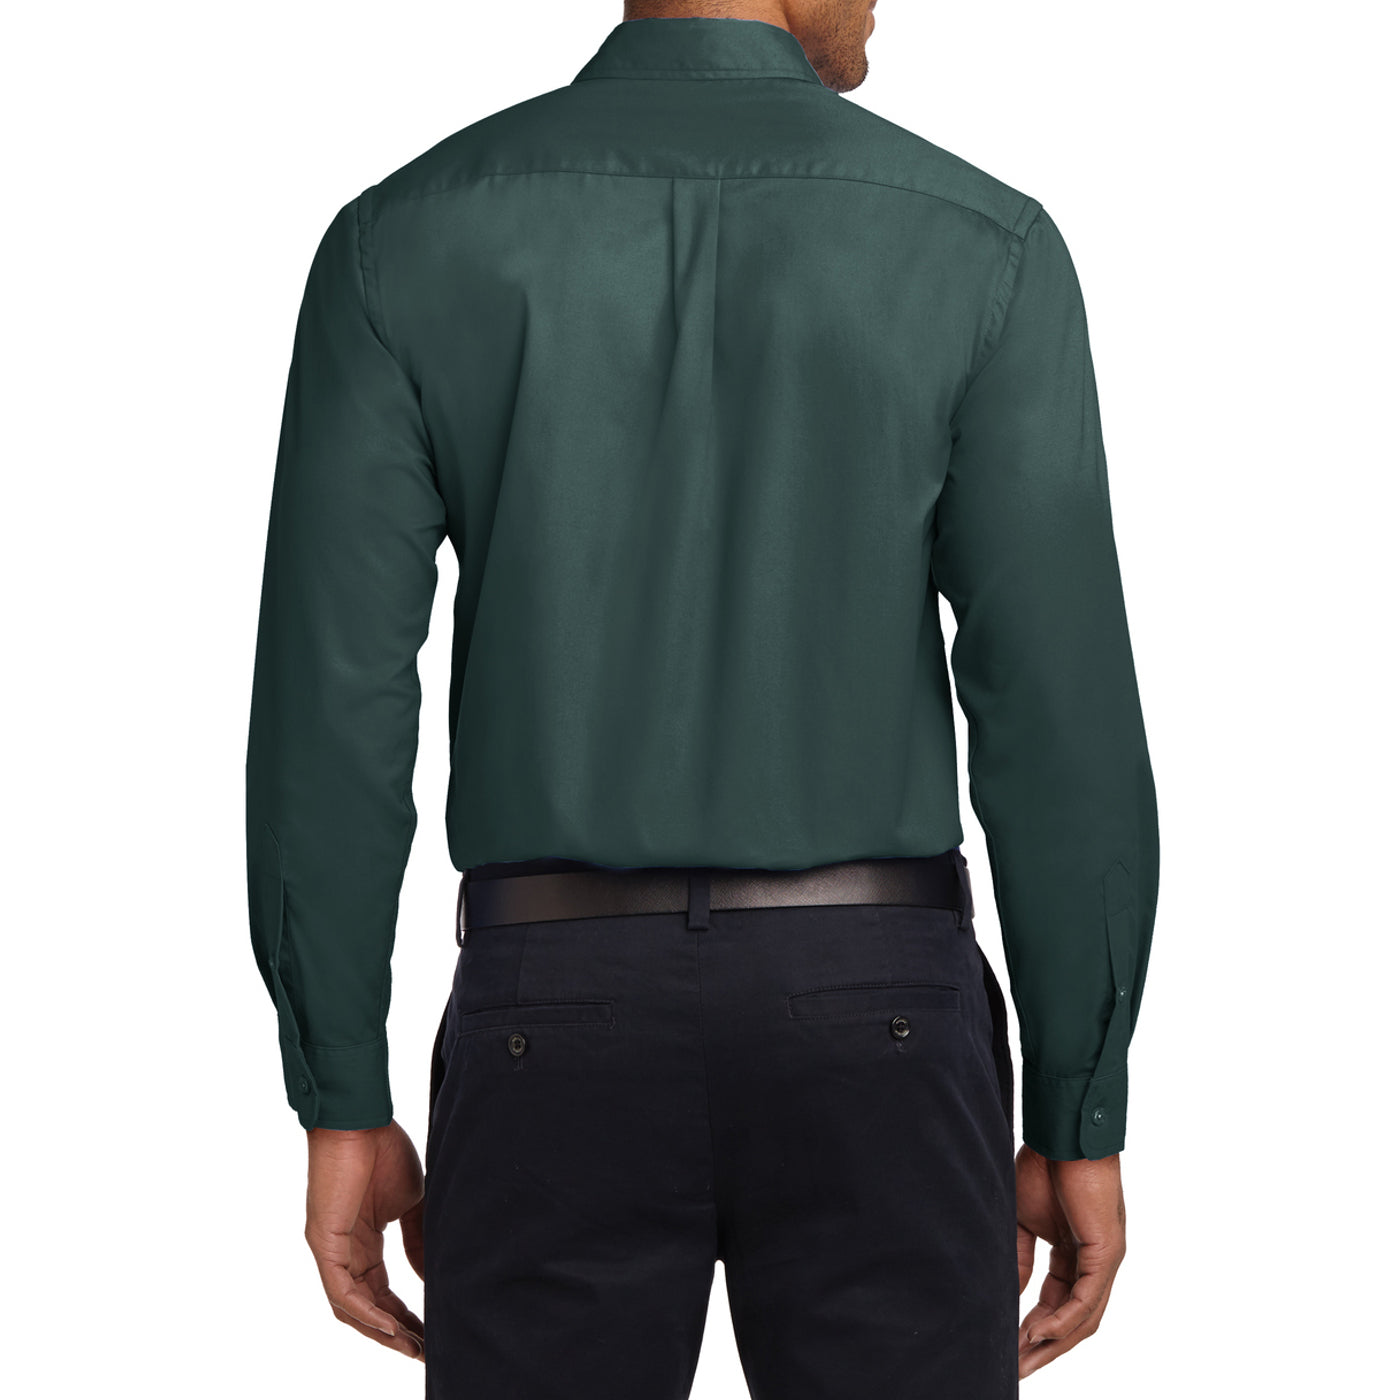 Men's Long Sleeve Easy Care Shirt - Dark Green/ Navy - Back